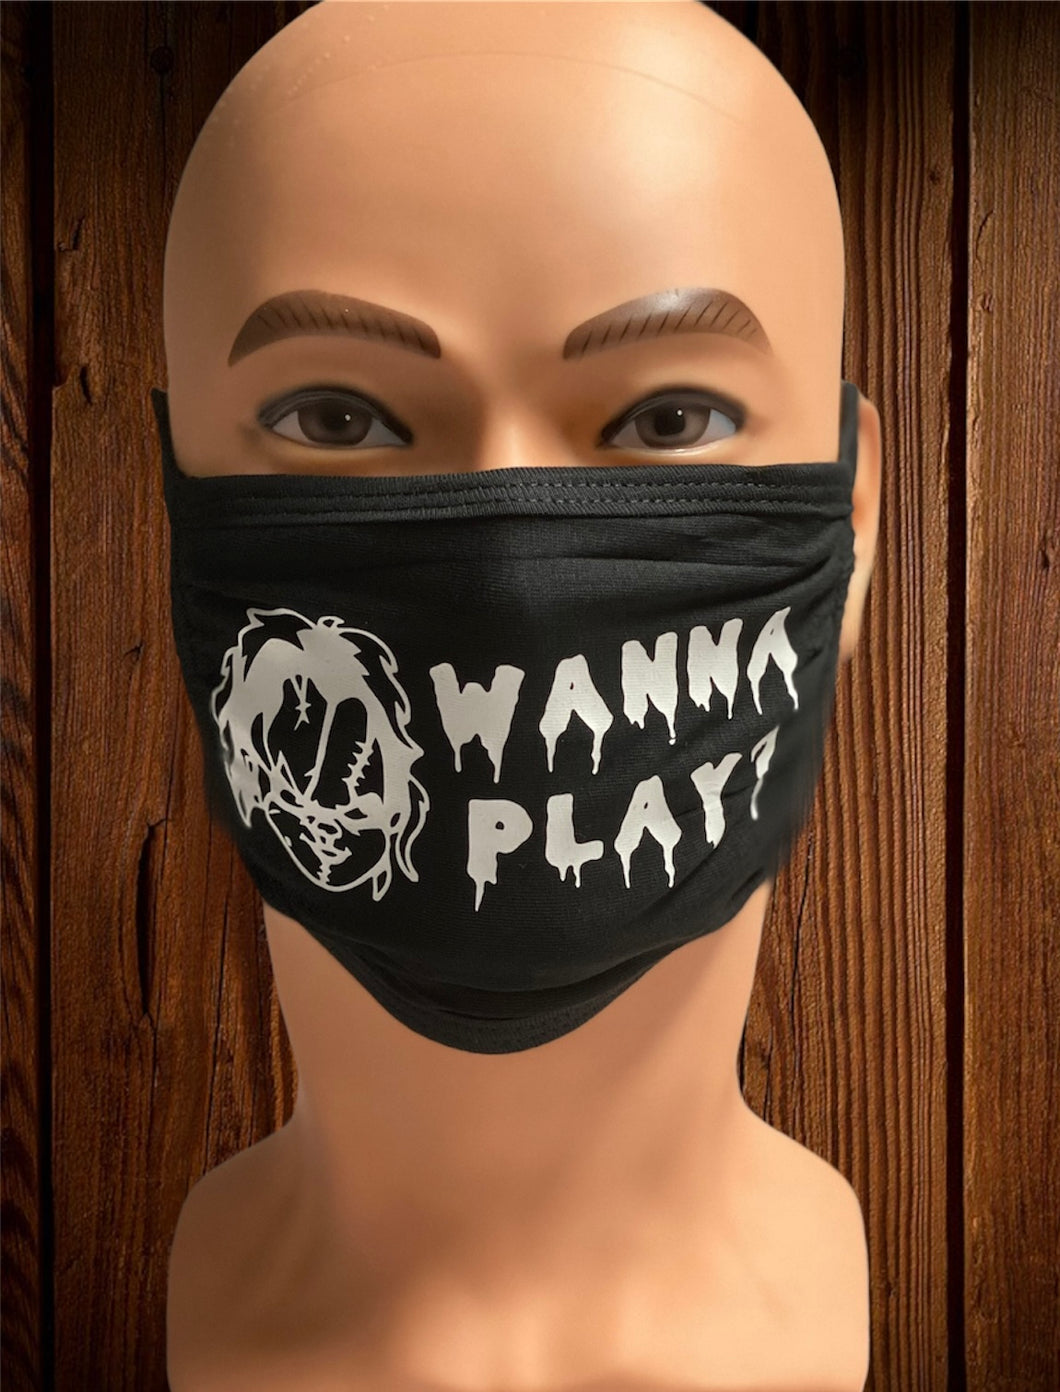 Wanna play - Chucky face Mask